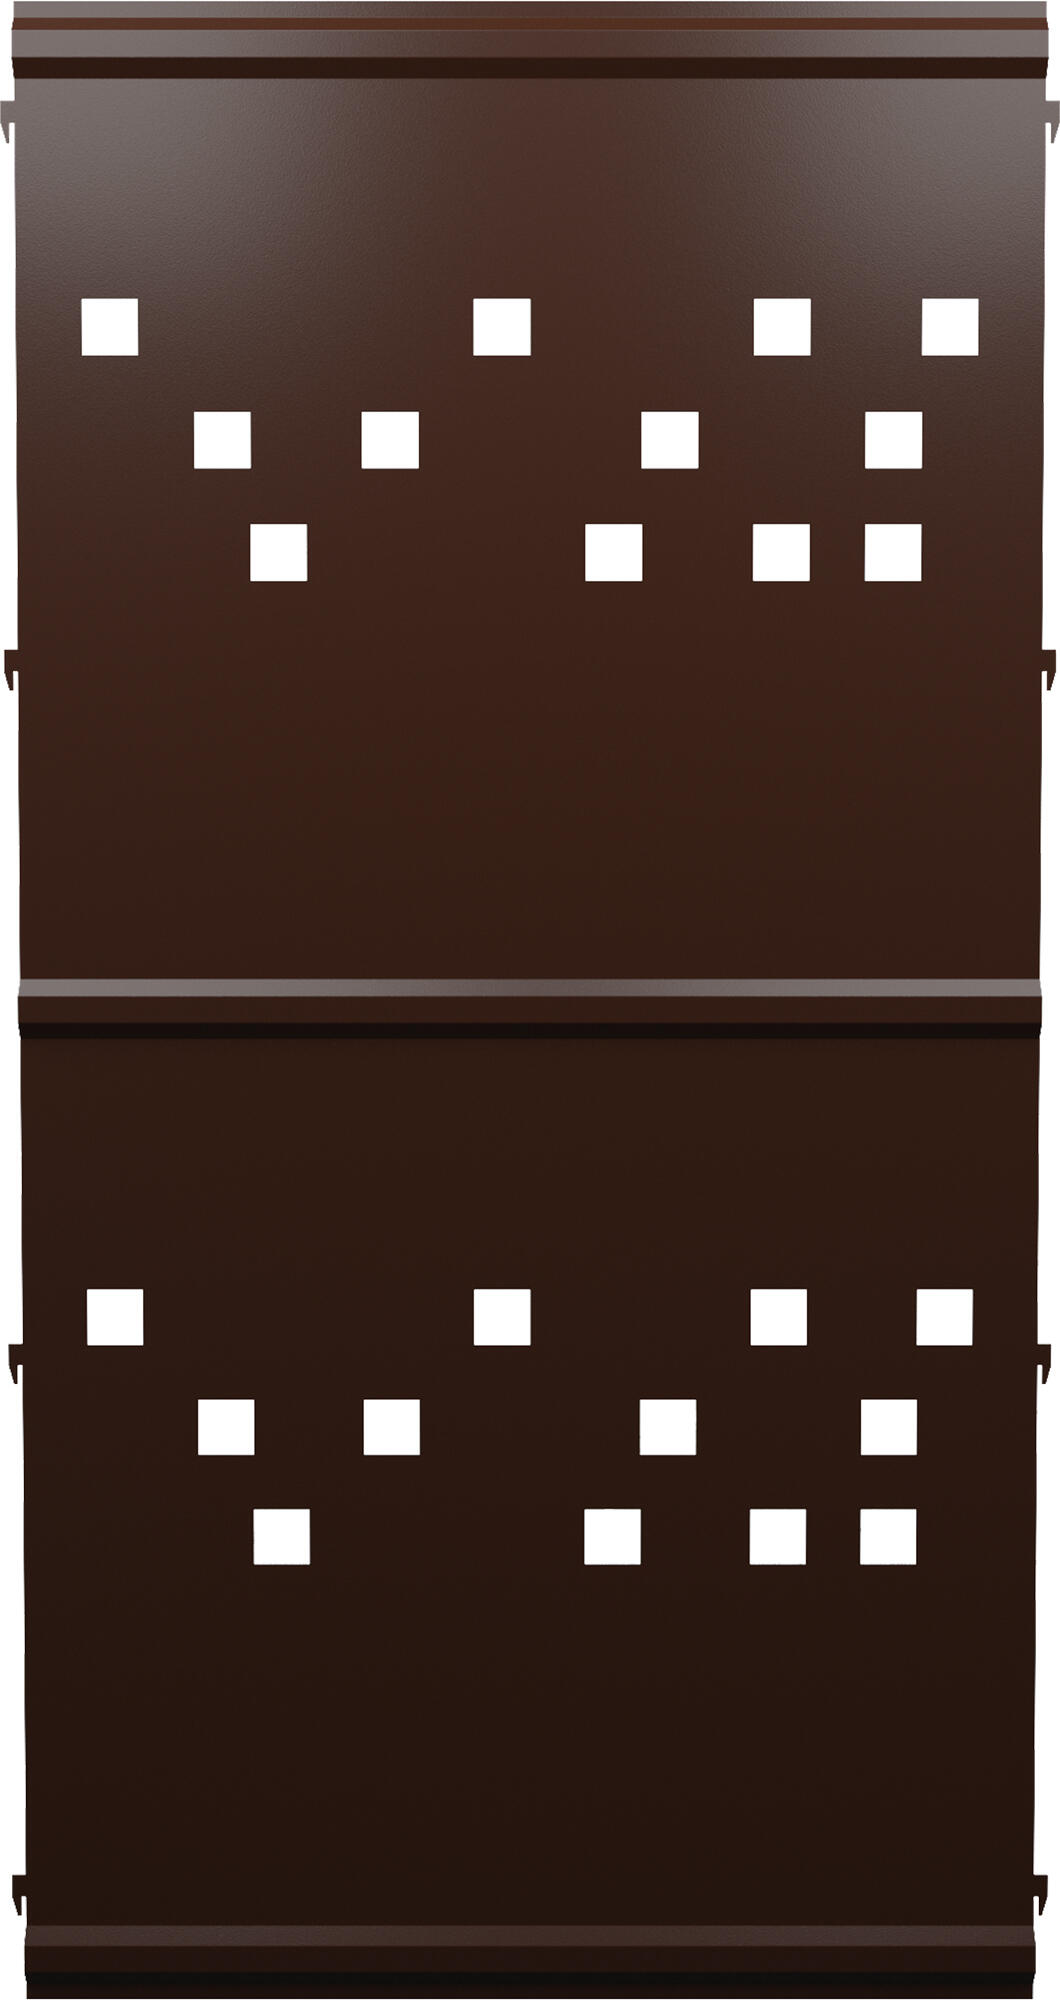 Panel remate valla acero galvanizado franja cuadros marrón forja 144x73,5 cm